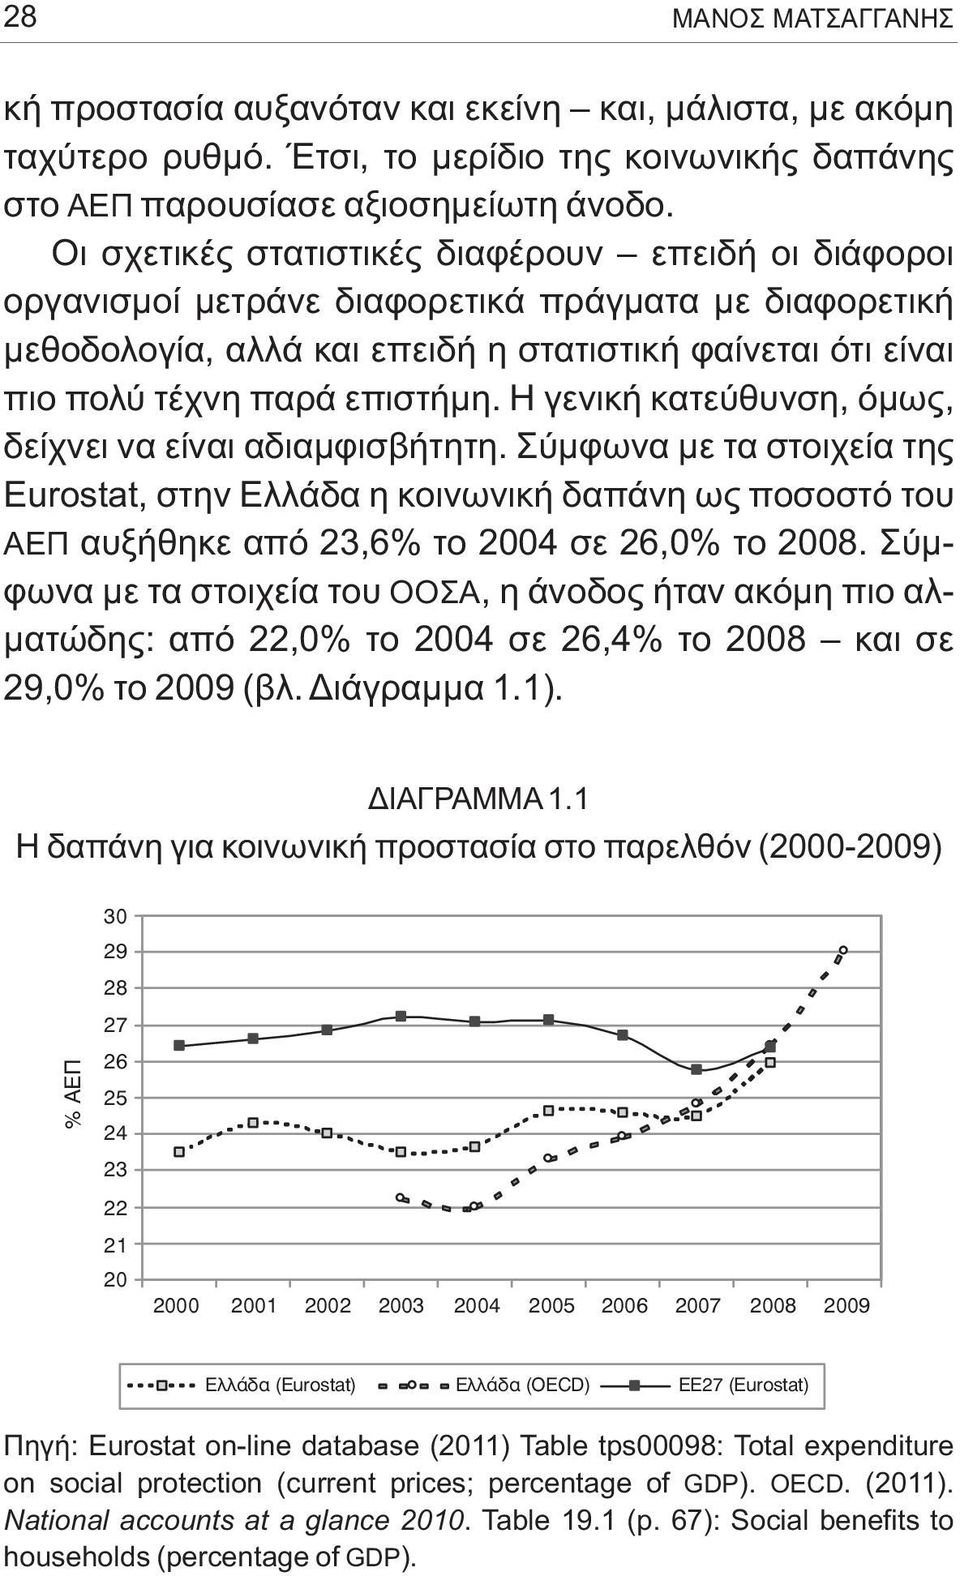 Η γενική κατεύθυνση, όμως, δείχνει να είναι αδιαμφισβήτητη. Σύμφωνα με τα στοιχεία της Eurostat, στην Ελλάδα η κοινωνική δαπάνη ως ποσοστό του ΑΕΠ αυξήθηκε από 23,6% το 2004 σε 26,0% το 2008.